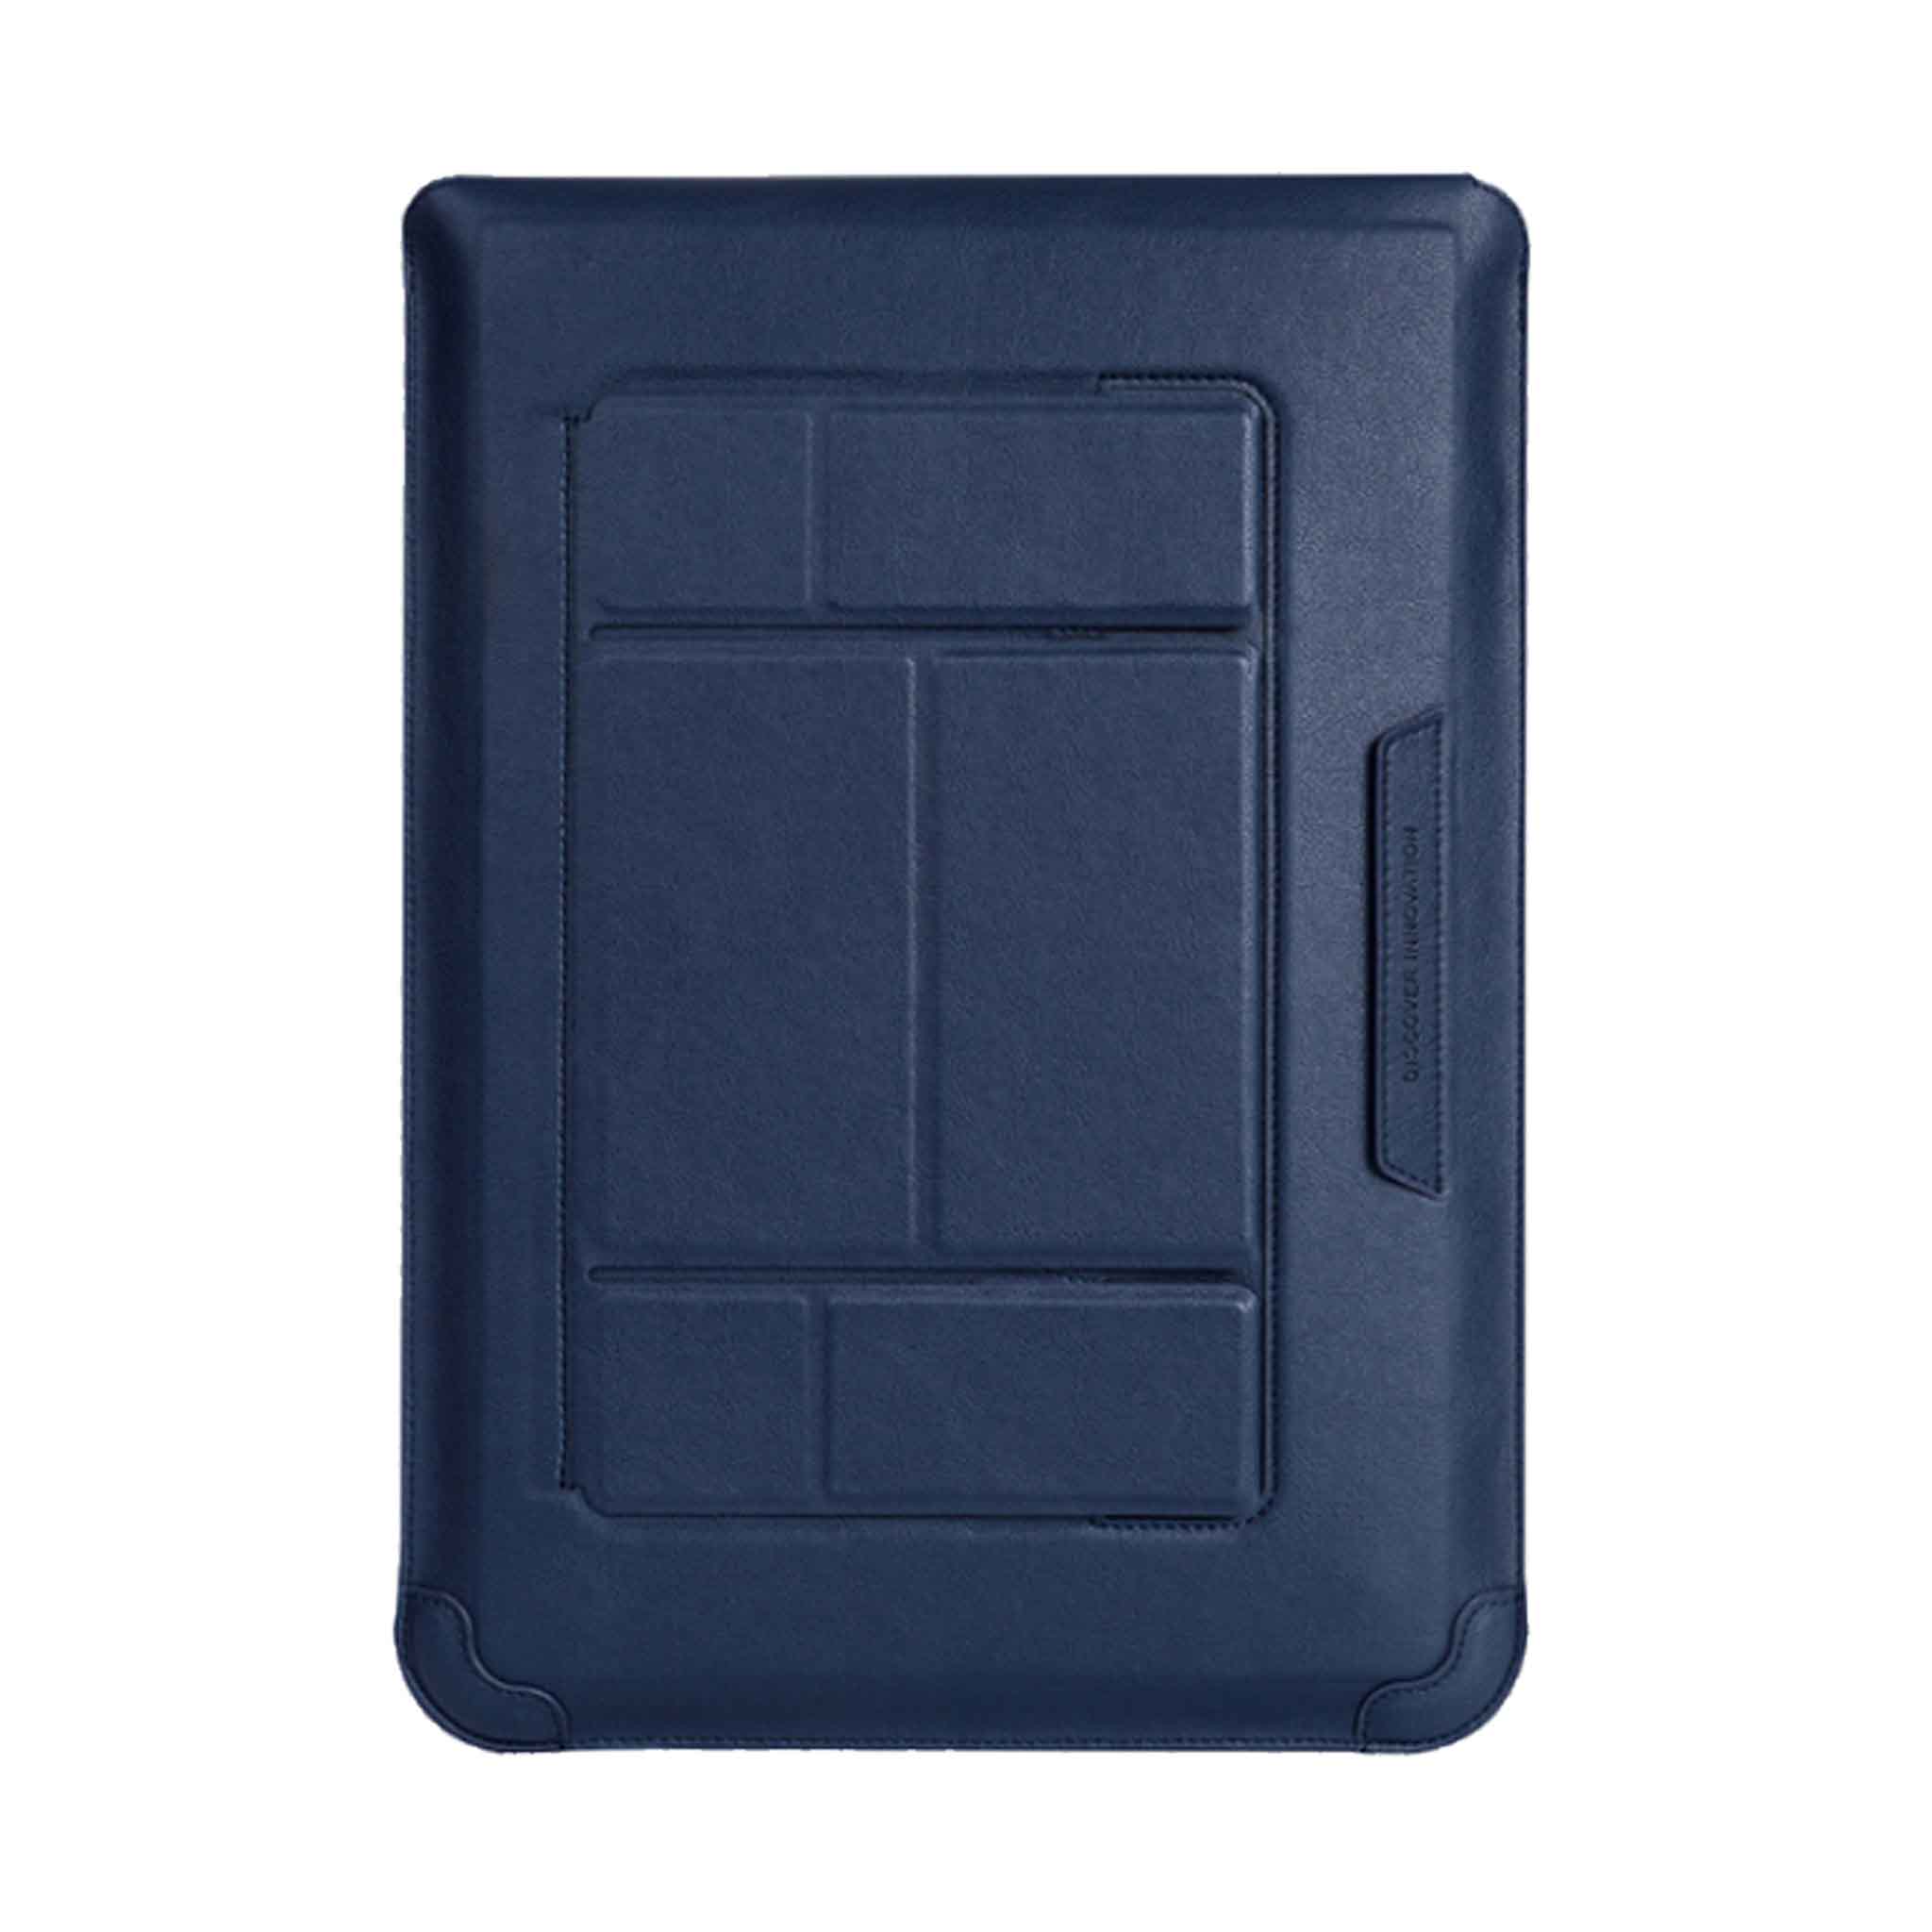 Notebook 14 inch / Deep Blue